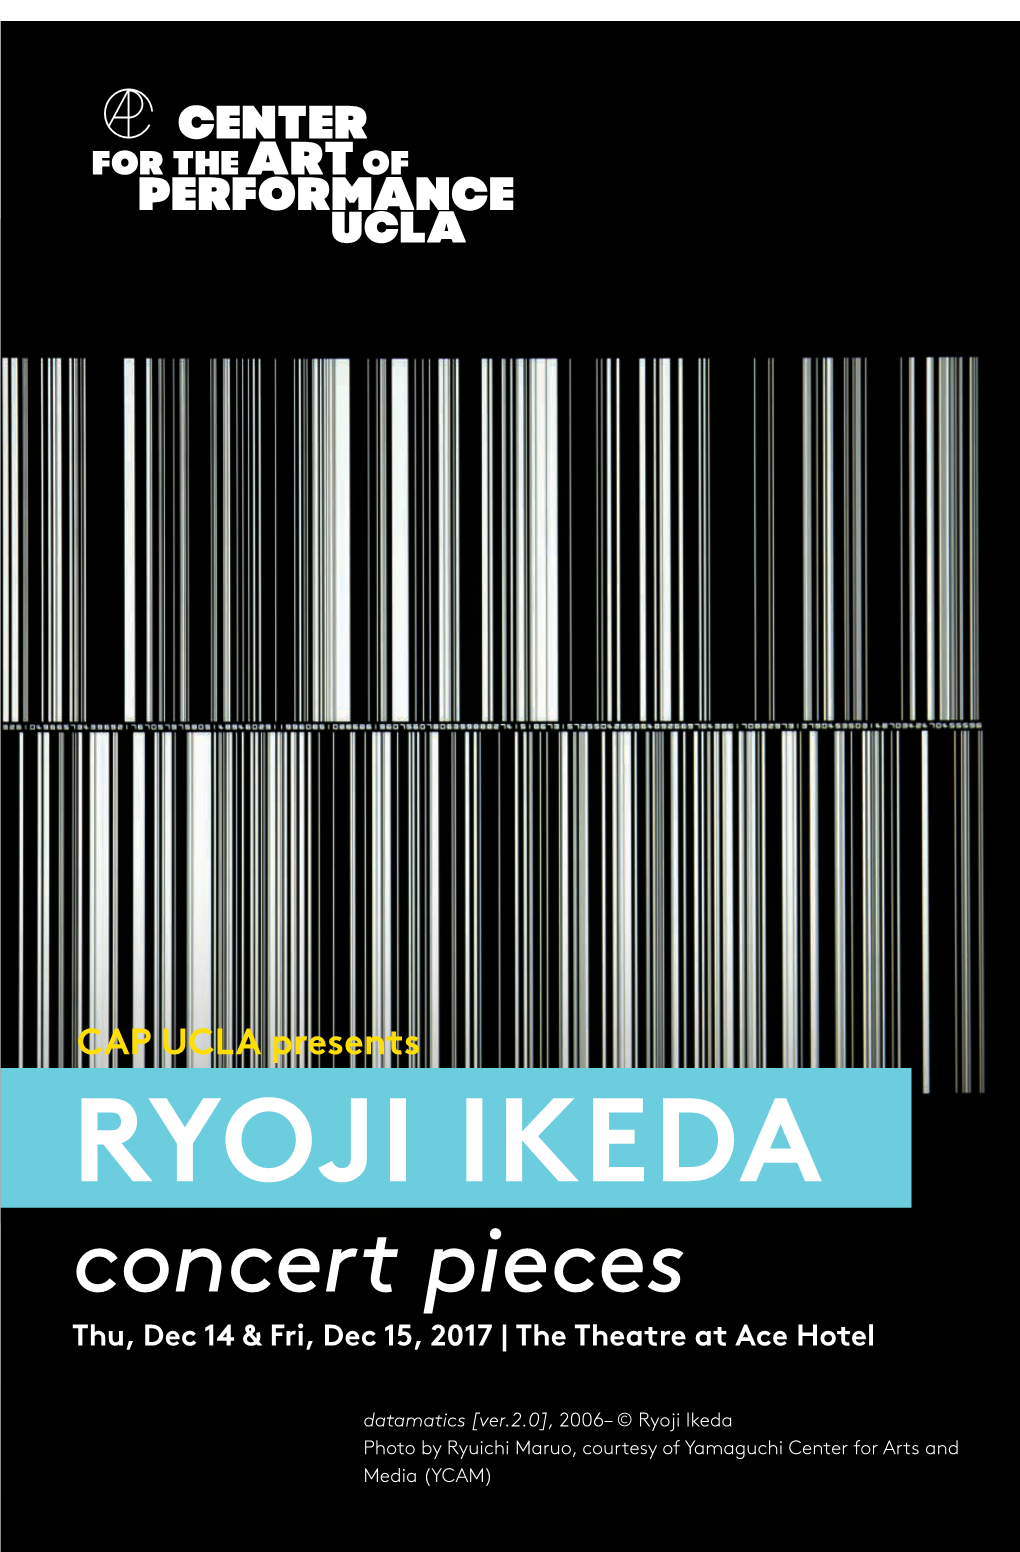 RYOJI IKEDA Concert Pieces Thu, Dec 14 & Fri, Dec 15, 2017 | the Theatre at Ace Hotel